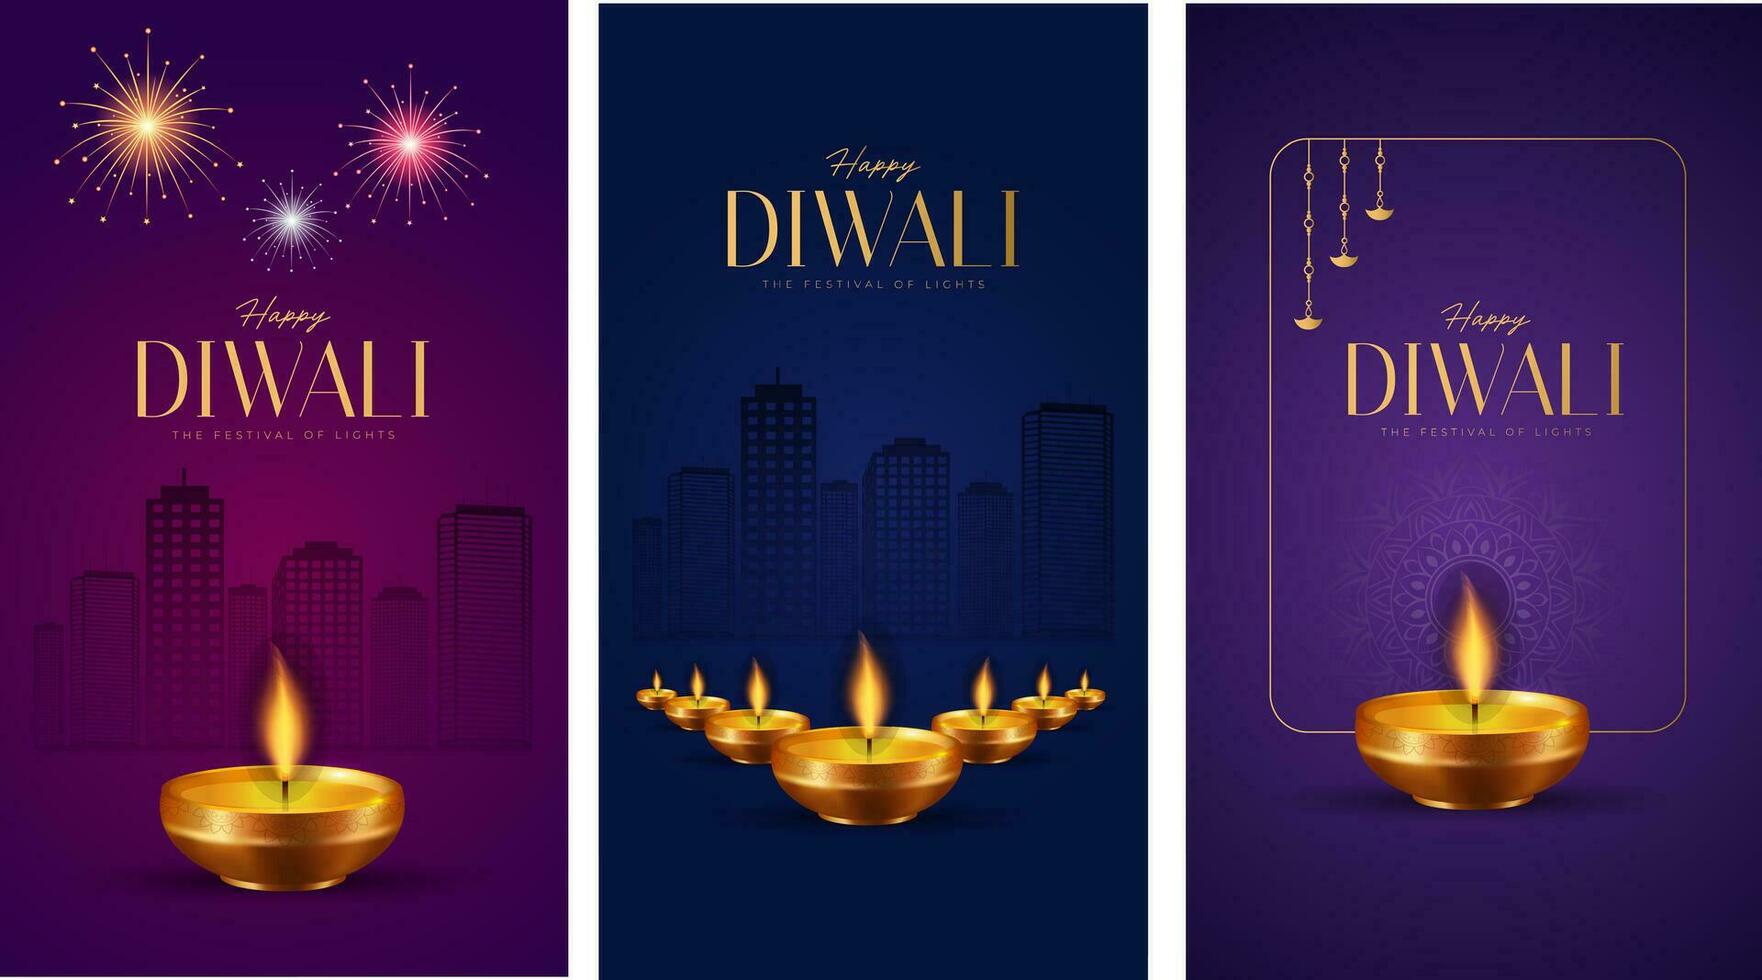 Lycklig diwali social media posta för annons, status lyckönskningar, baner, hälsning kort vektor